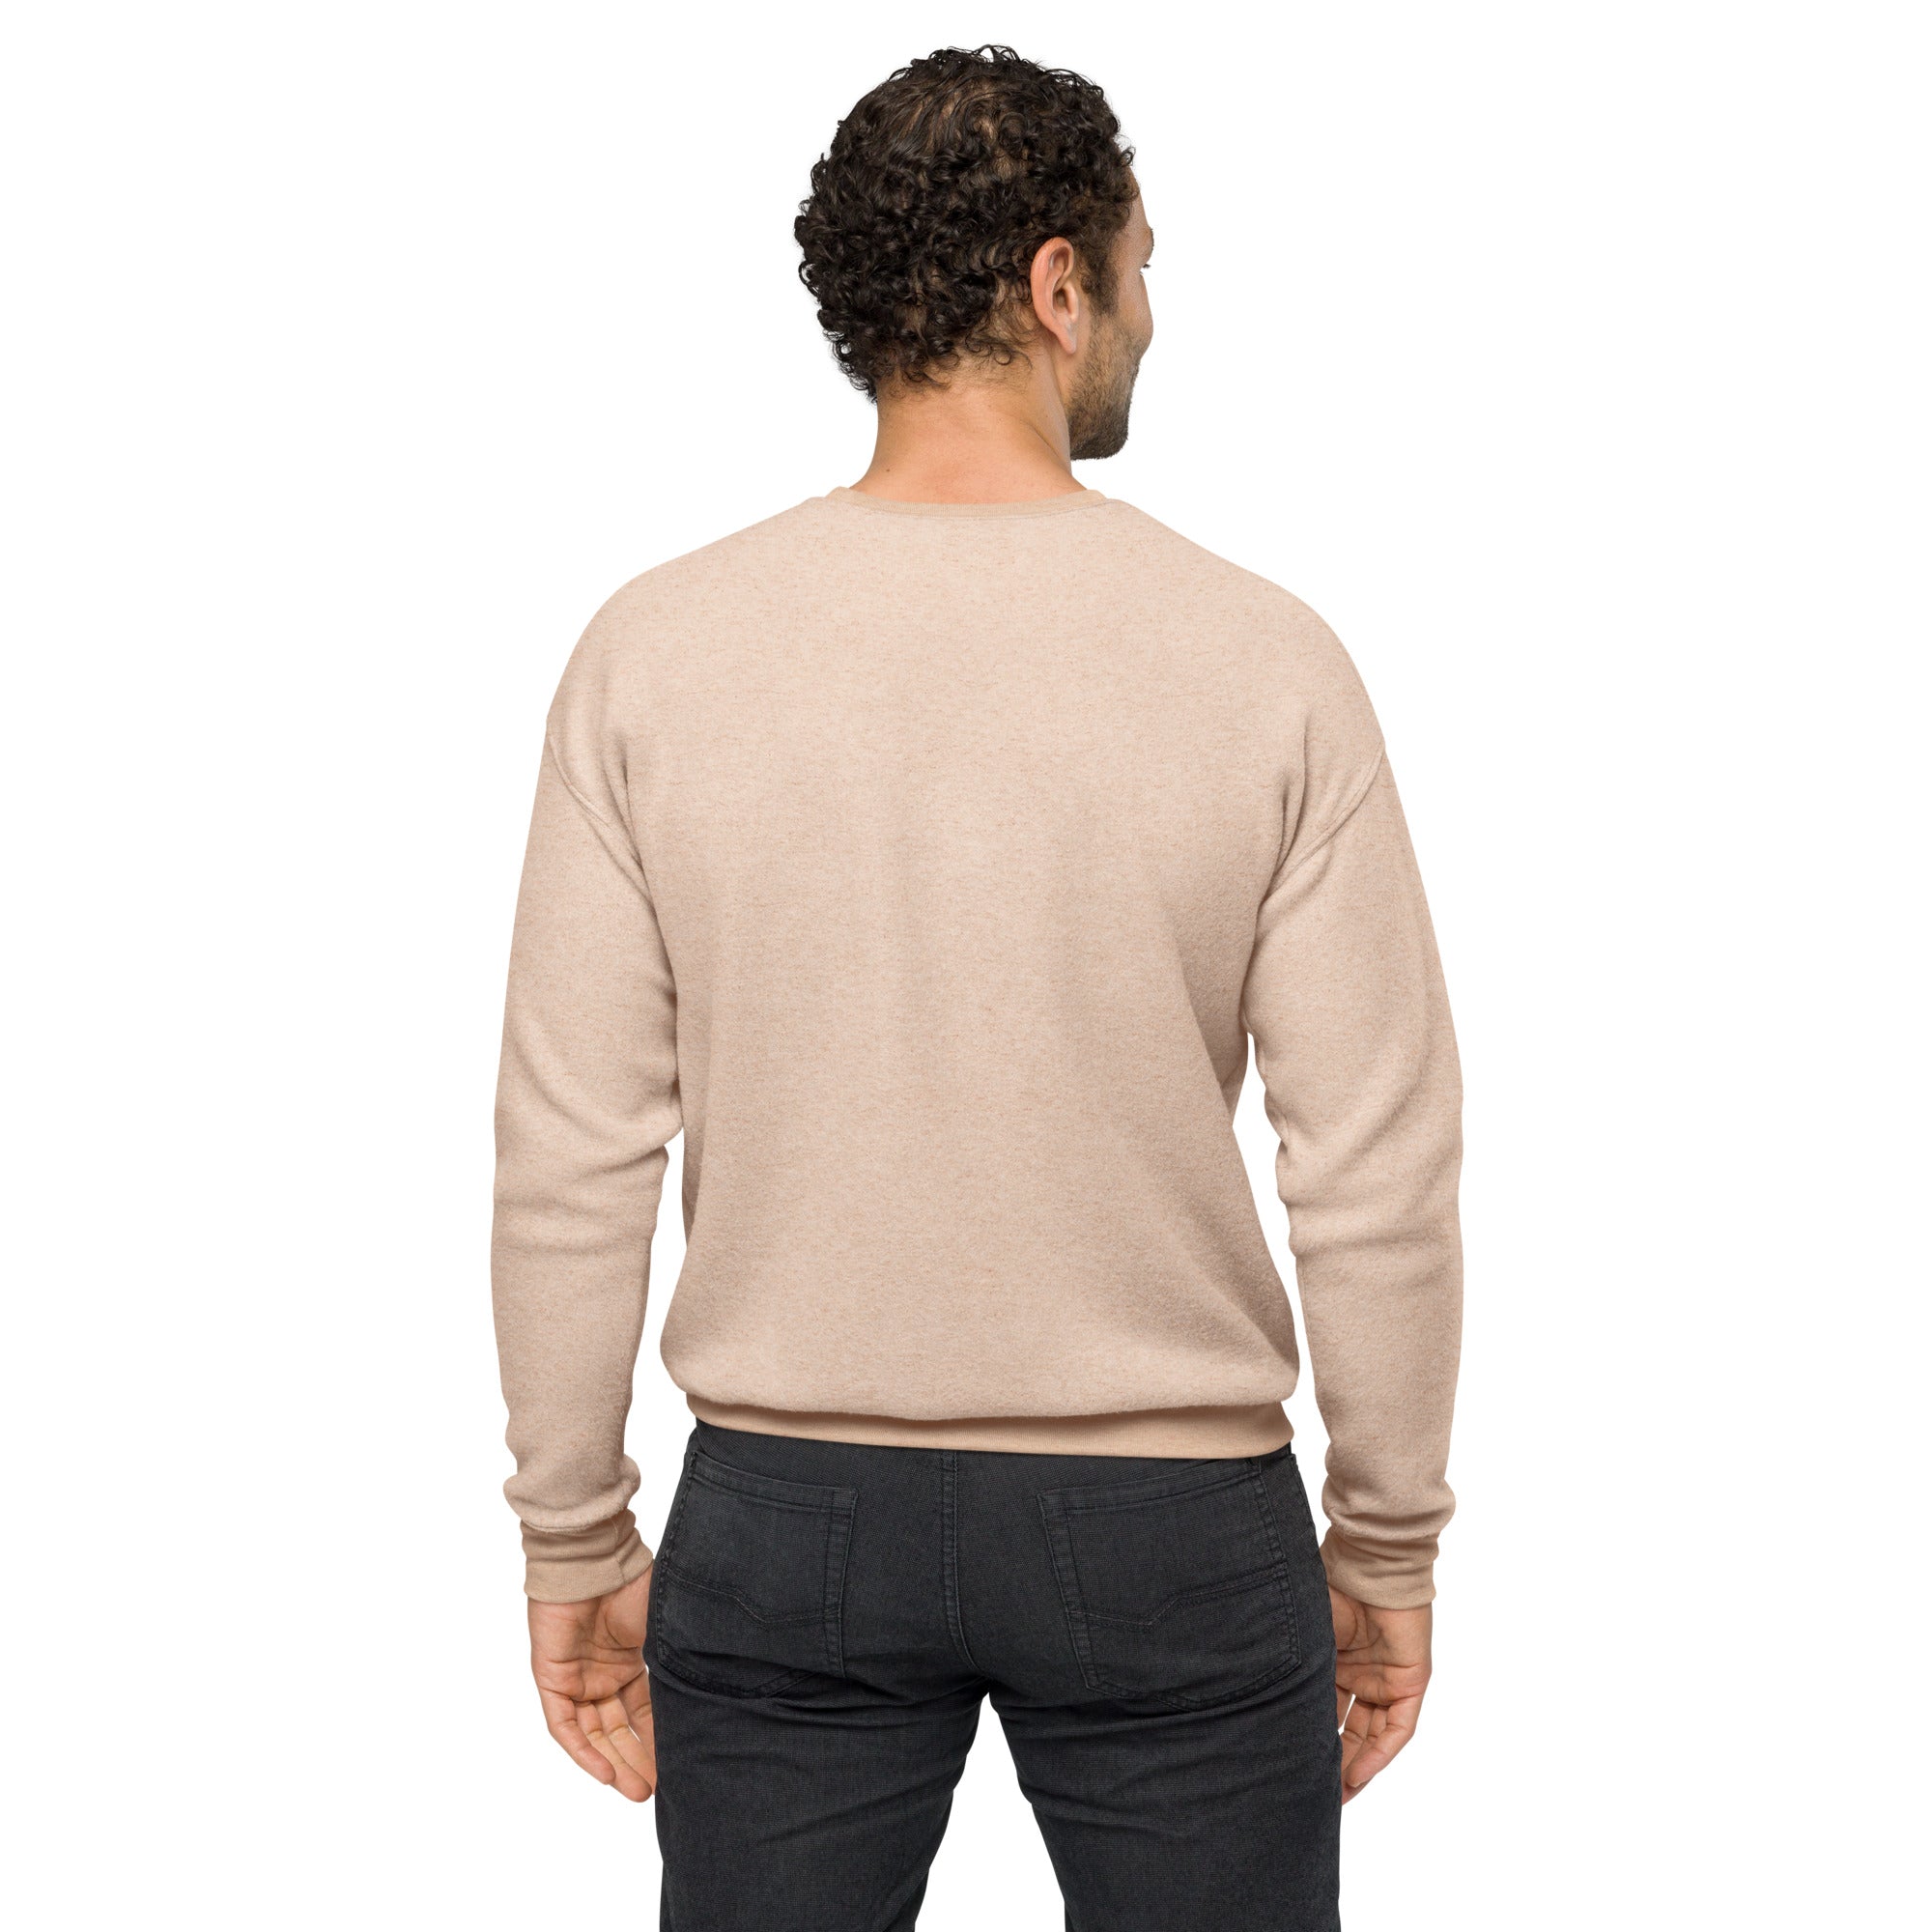 Men's Sueded Fleece Sweatshirt - Tom Style Show